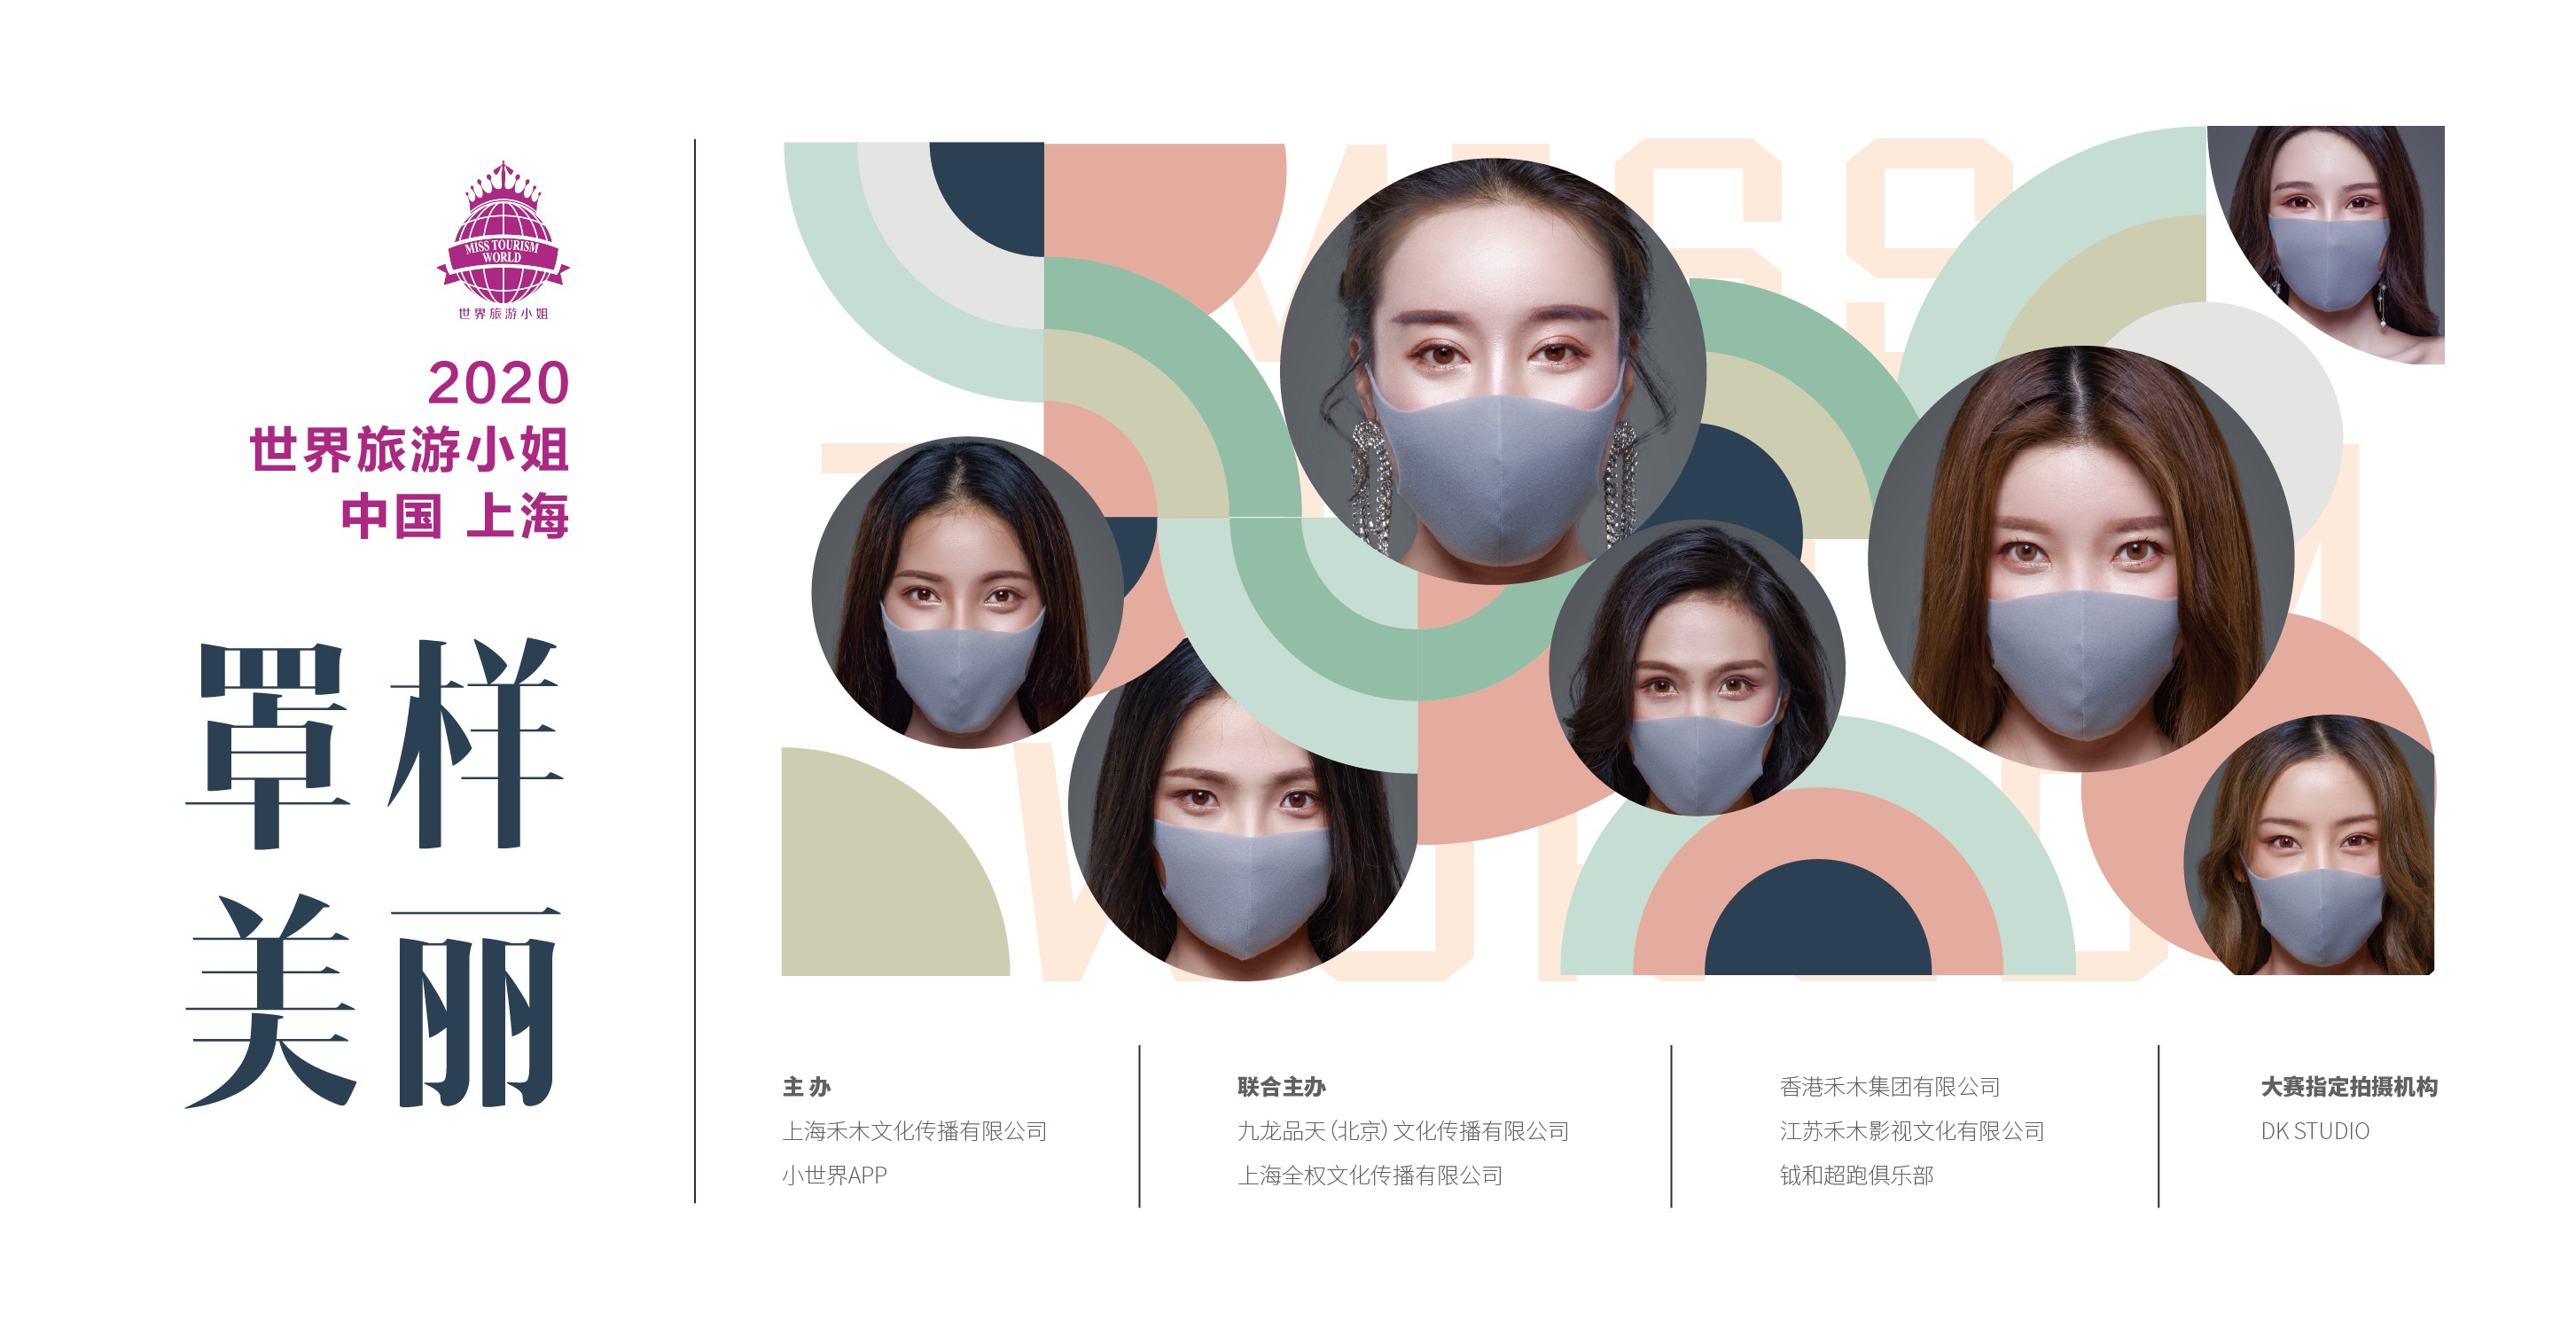 以“罩”樣美麗為主題的2020世界旅游小姐大賽上海啟幕